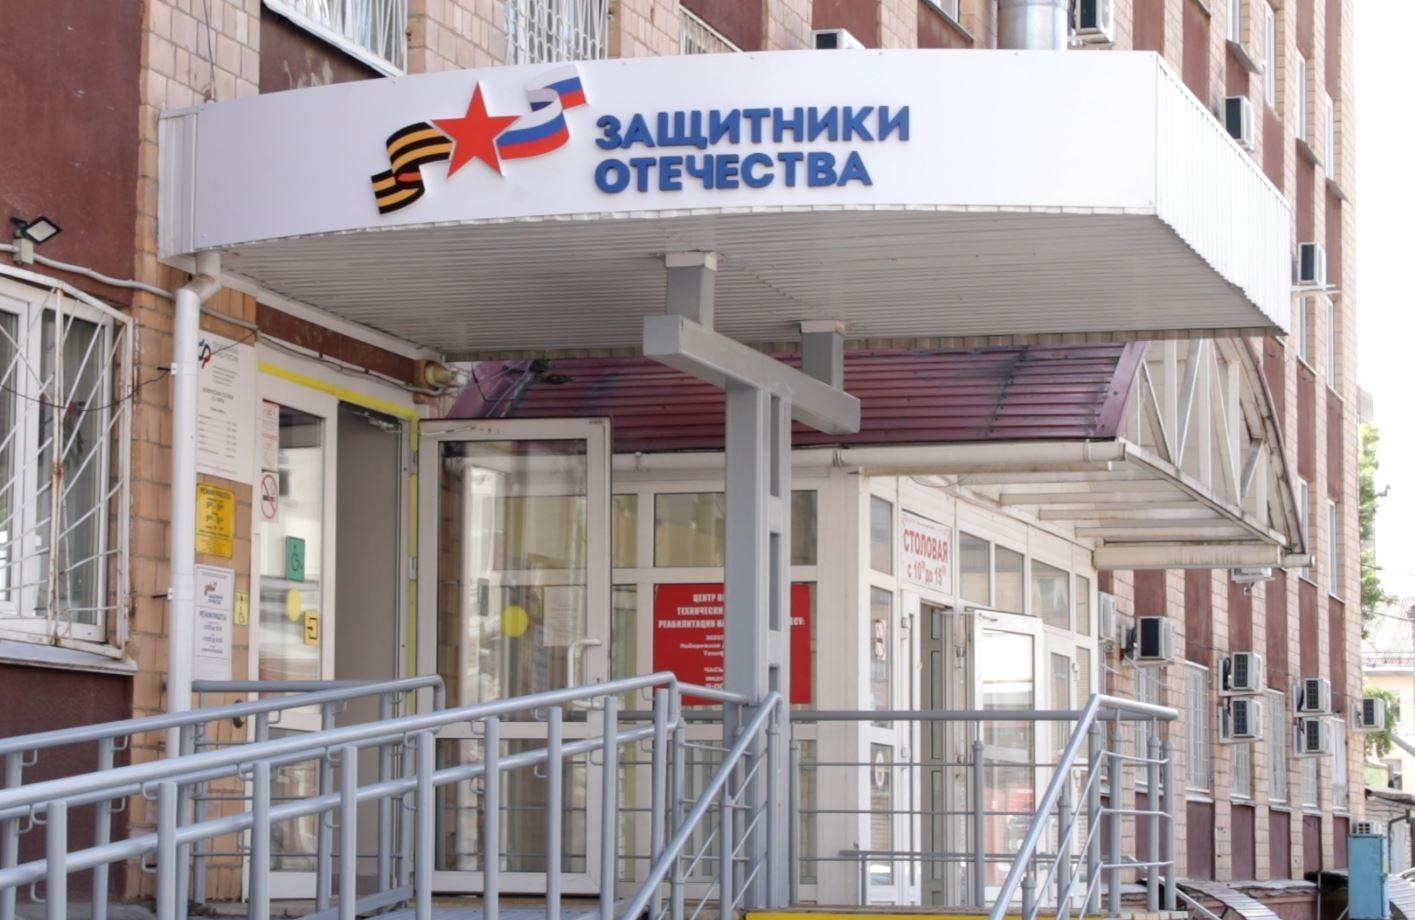 Больше 130 обращений поступило в филиал фонда «Защитники Отечества» в Орловской области